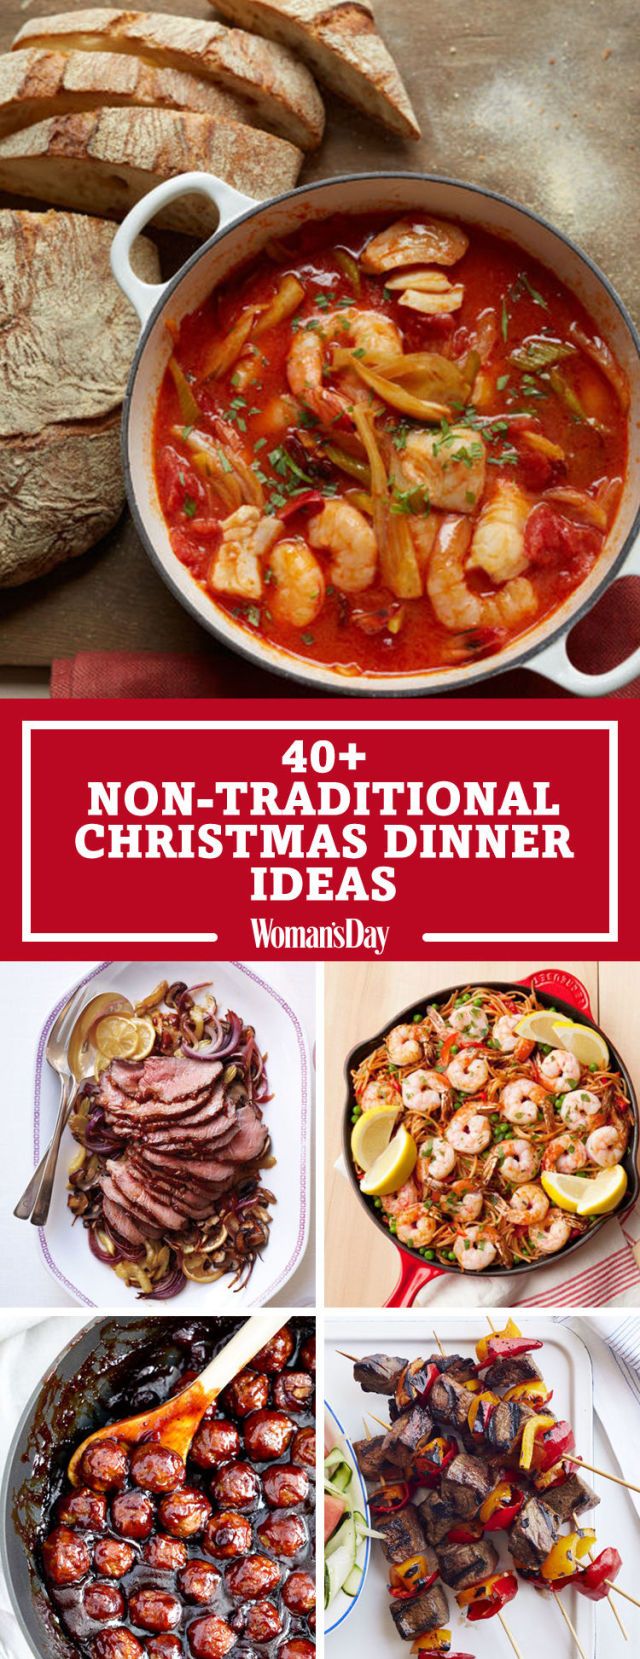 40+ Easy Christmas Dinner Ideas - Best Recipes for ...